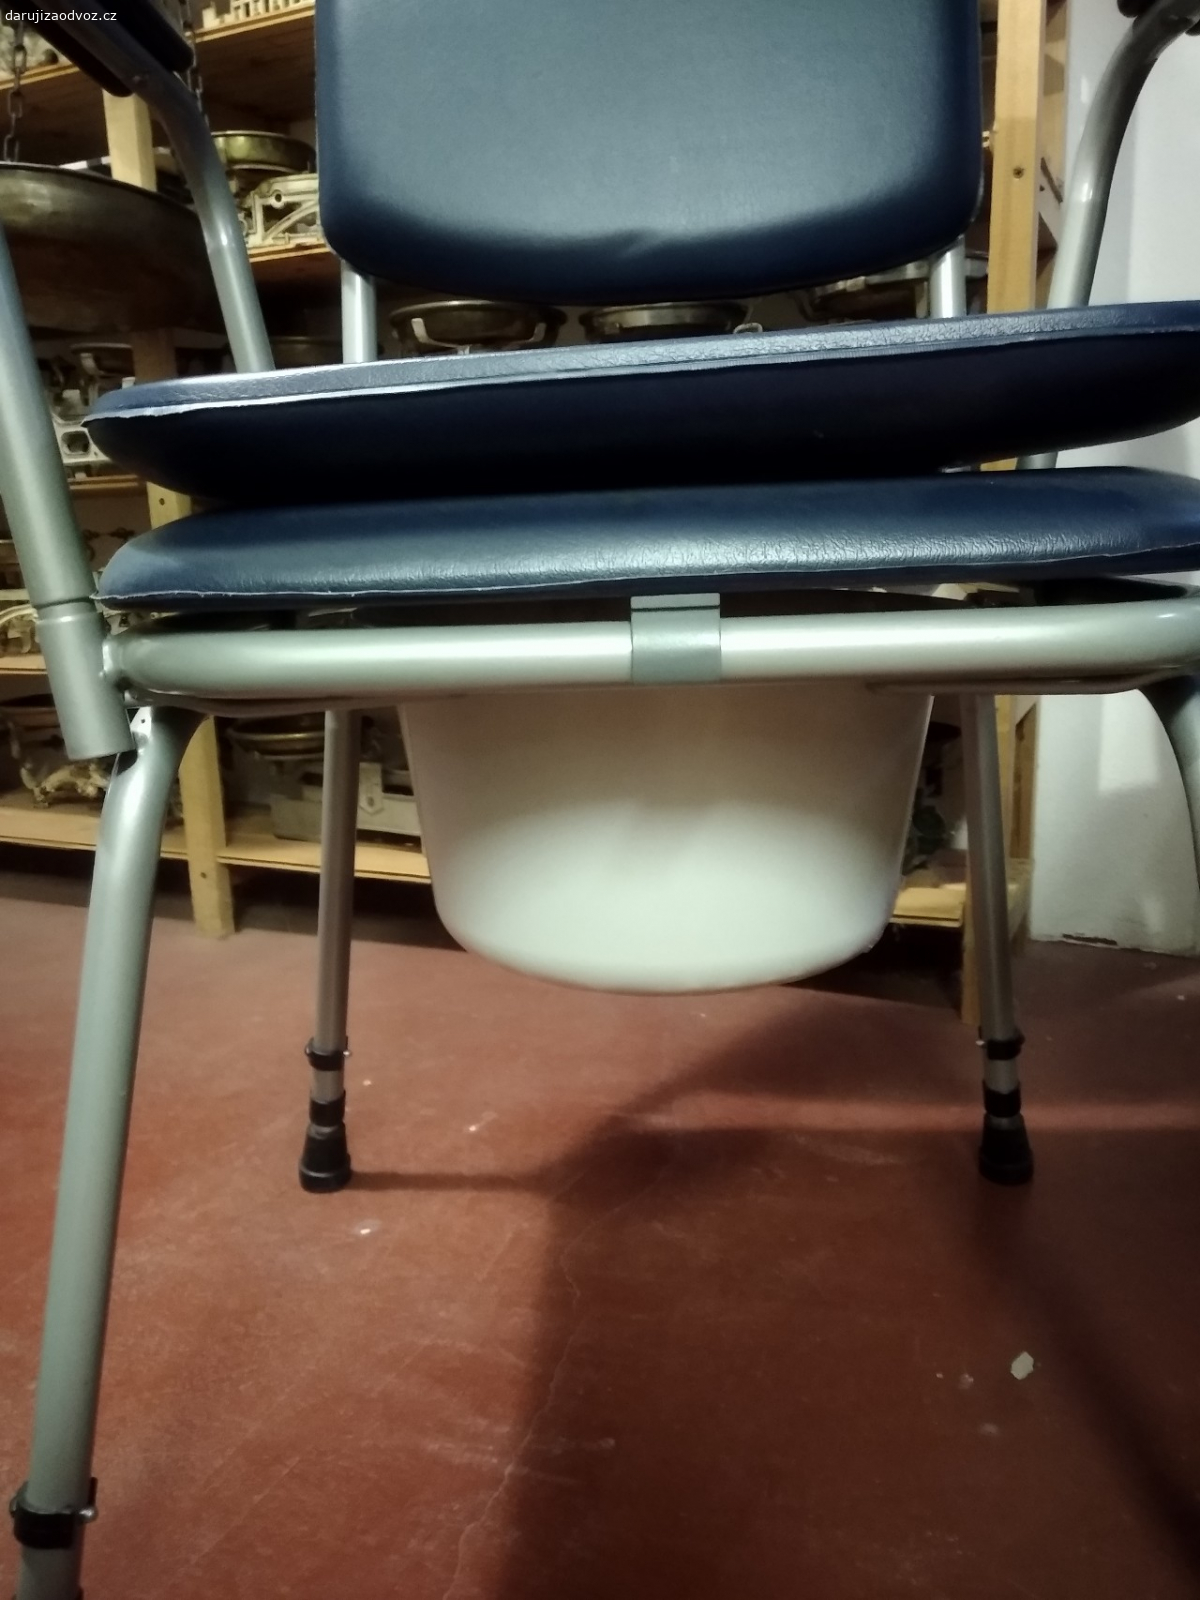 WC židle. Daruji WC židli, židle v top stavu, jen nádobka je lepená, ale funkční. Vše omyté, vydezinfikované, jen zaprášené, máme ji několik měsíců ve sklepě.